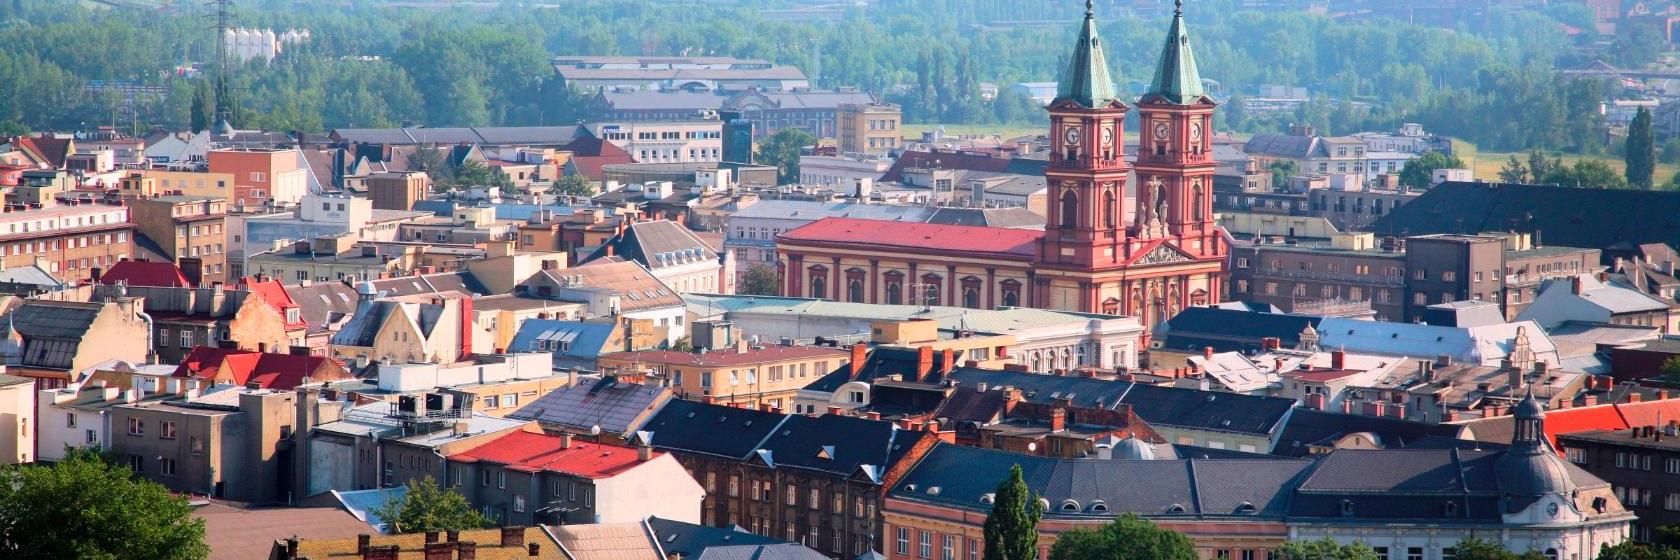 10 Best Ostrava Hotels, Czech Republic (From $35)